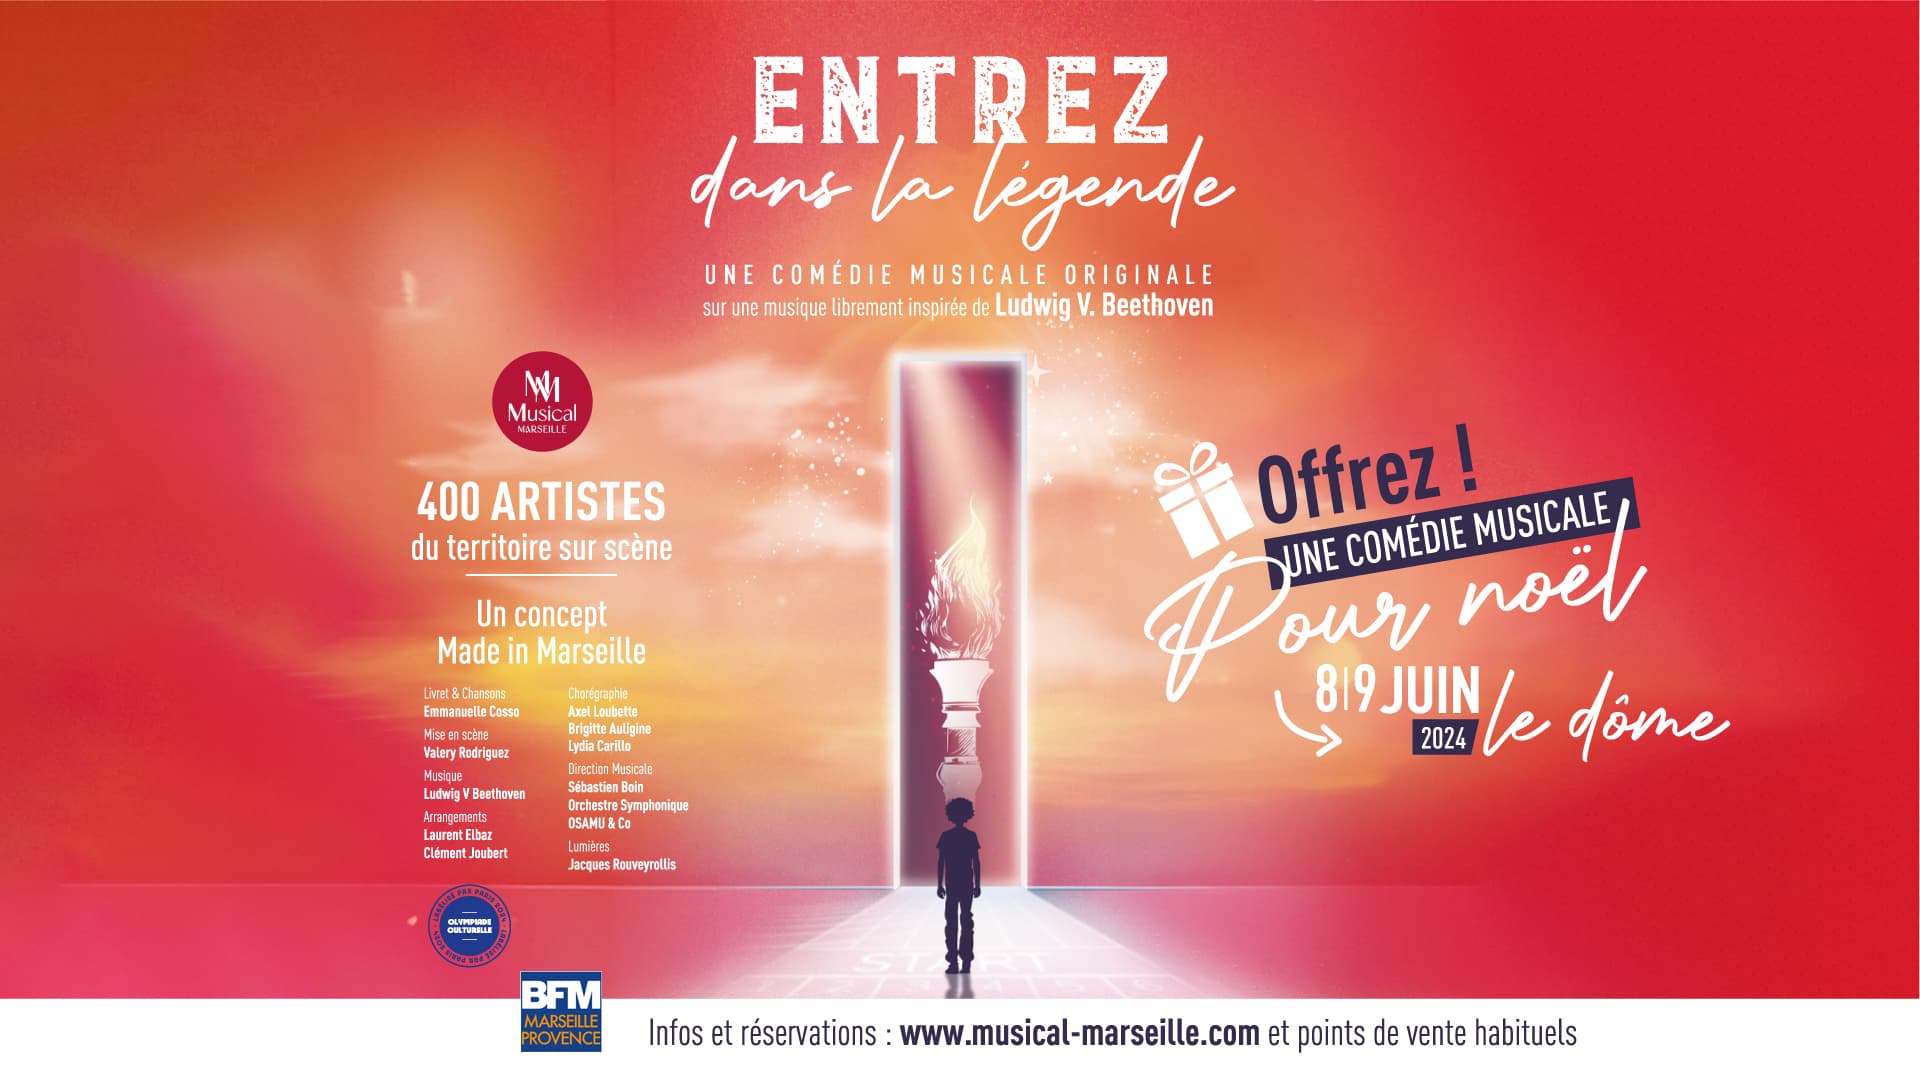 Entrez Dans La Légende - Une Comédie Musicale Originale at Le Dome Tickets